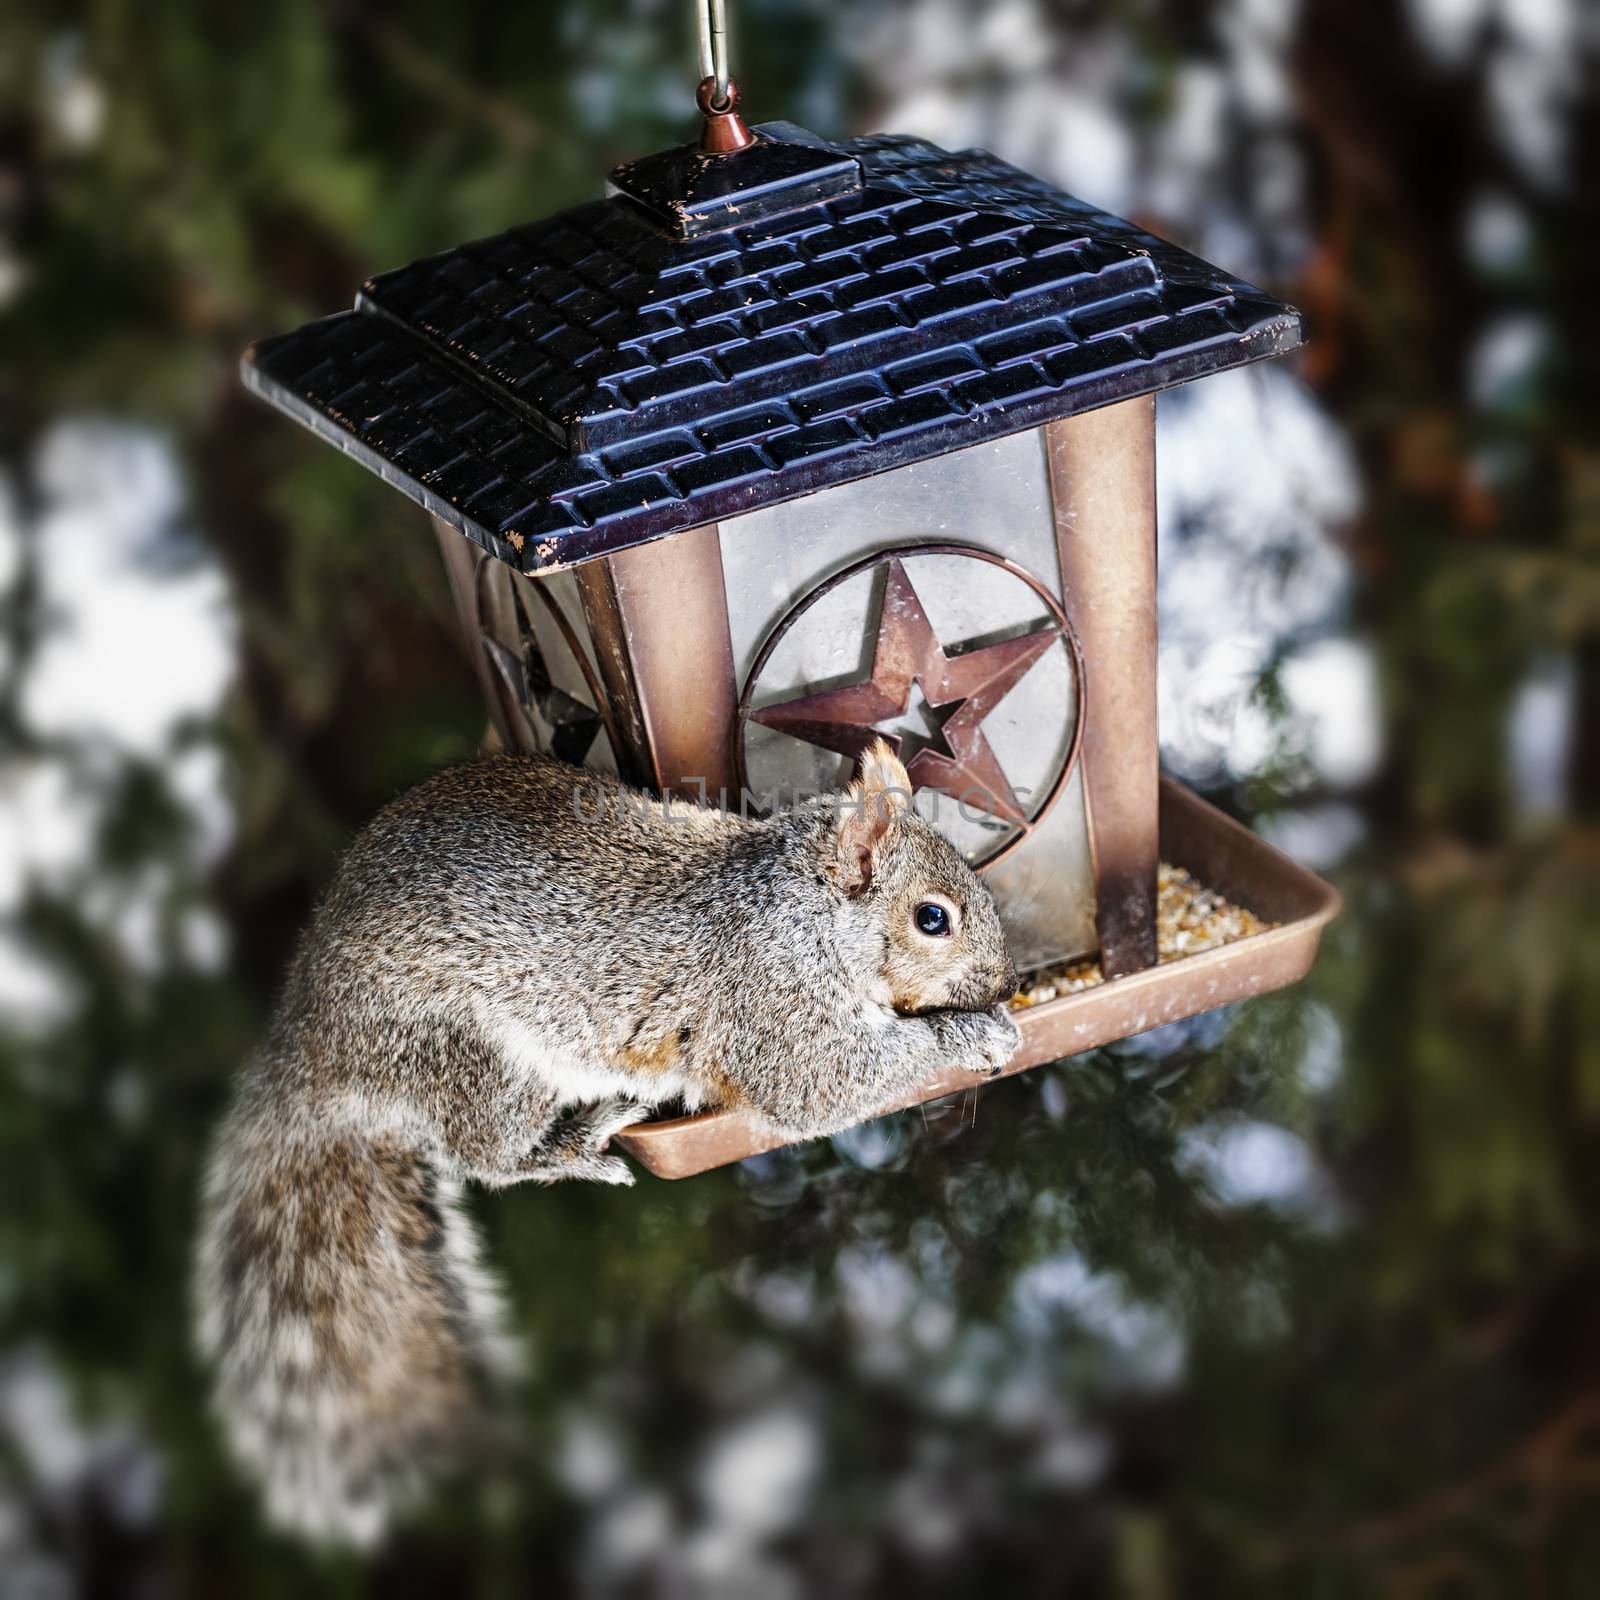 Squirrel stealing from bird feeder by elenathewise